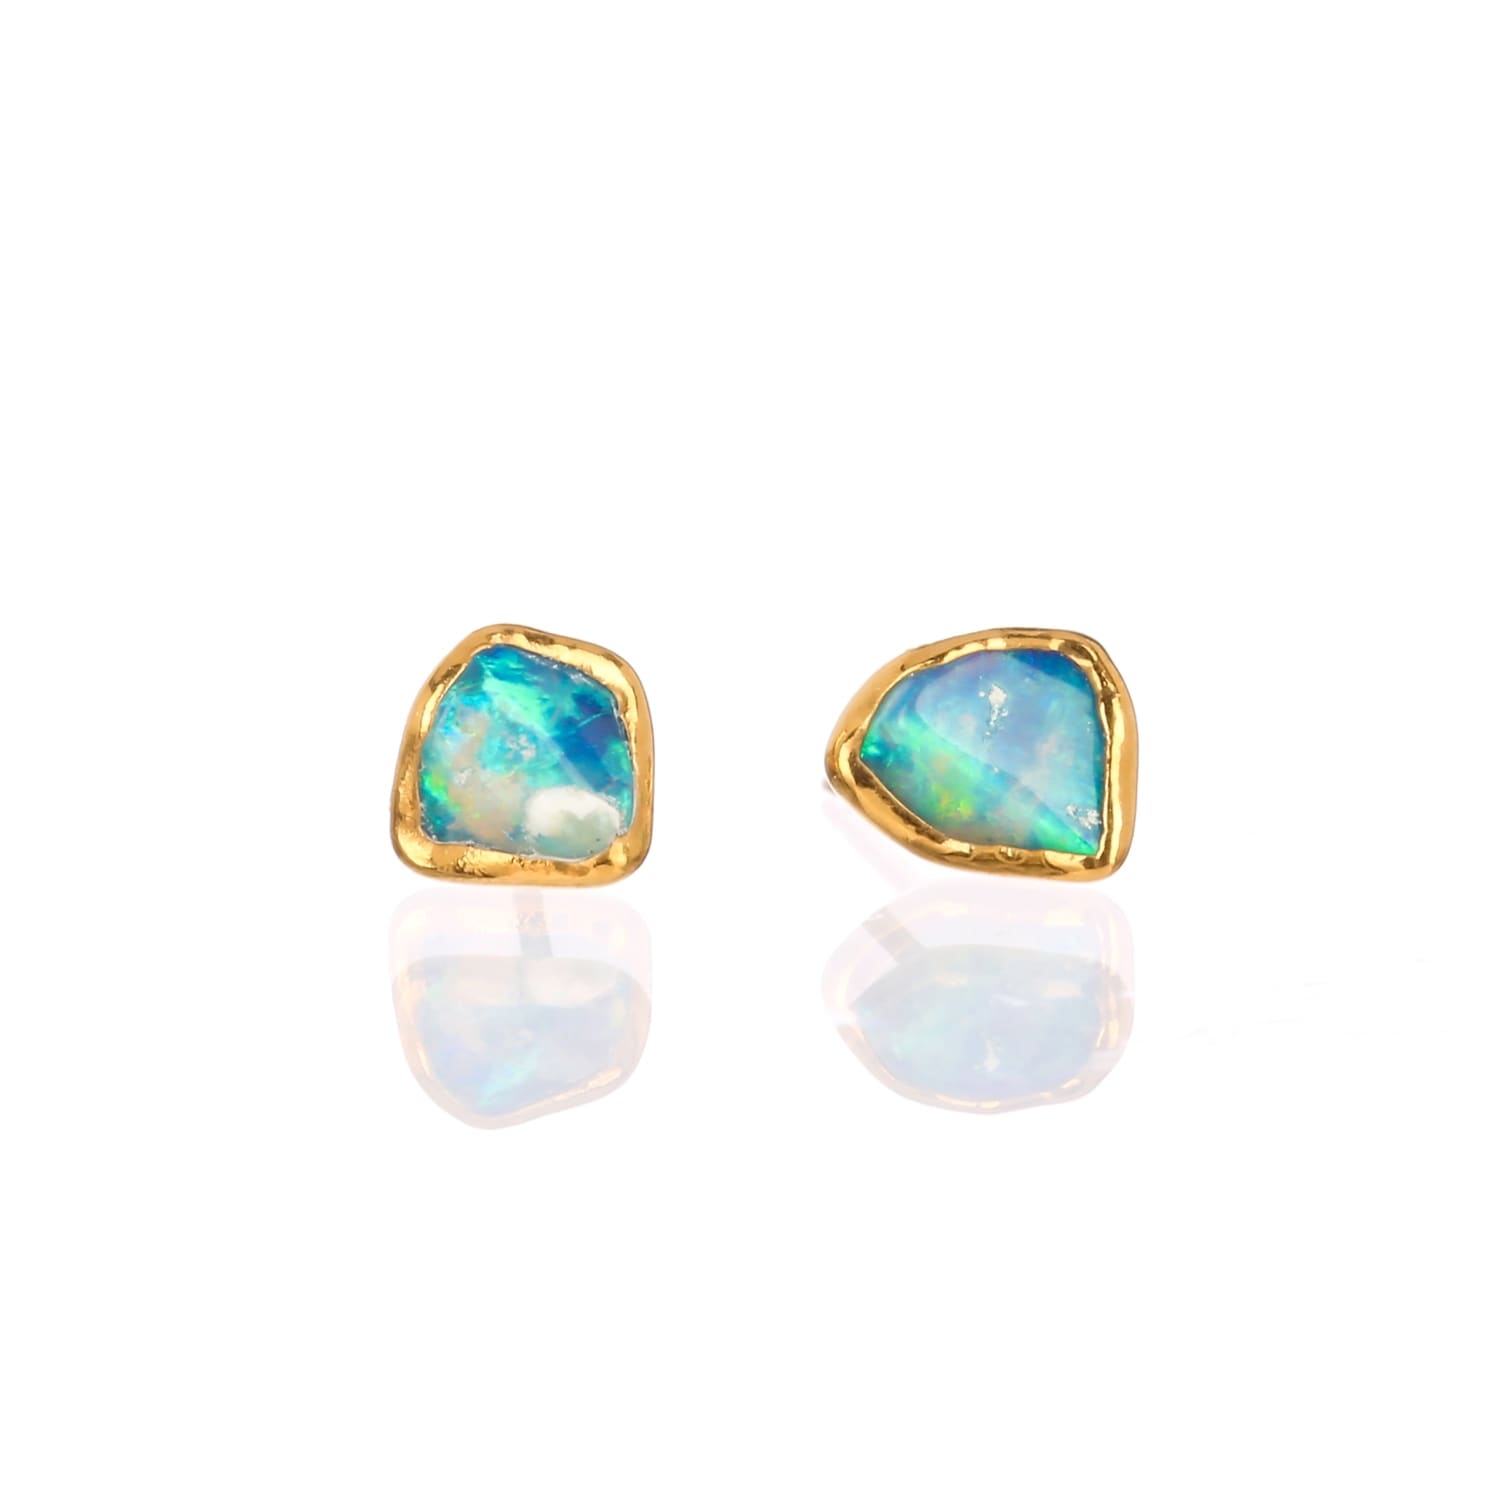 Dainty Raw Australian Opal Stud Earrings Gemstone Jewelry